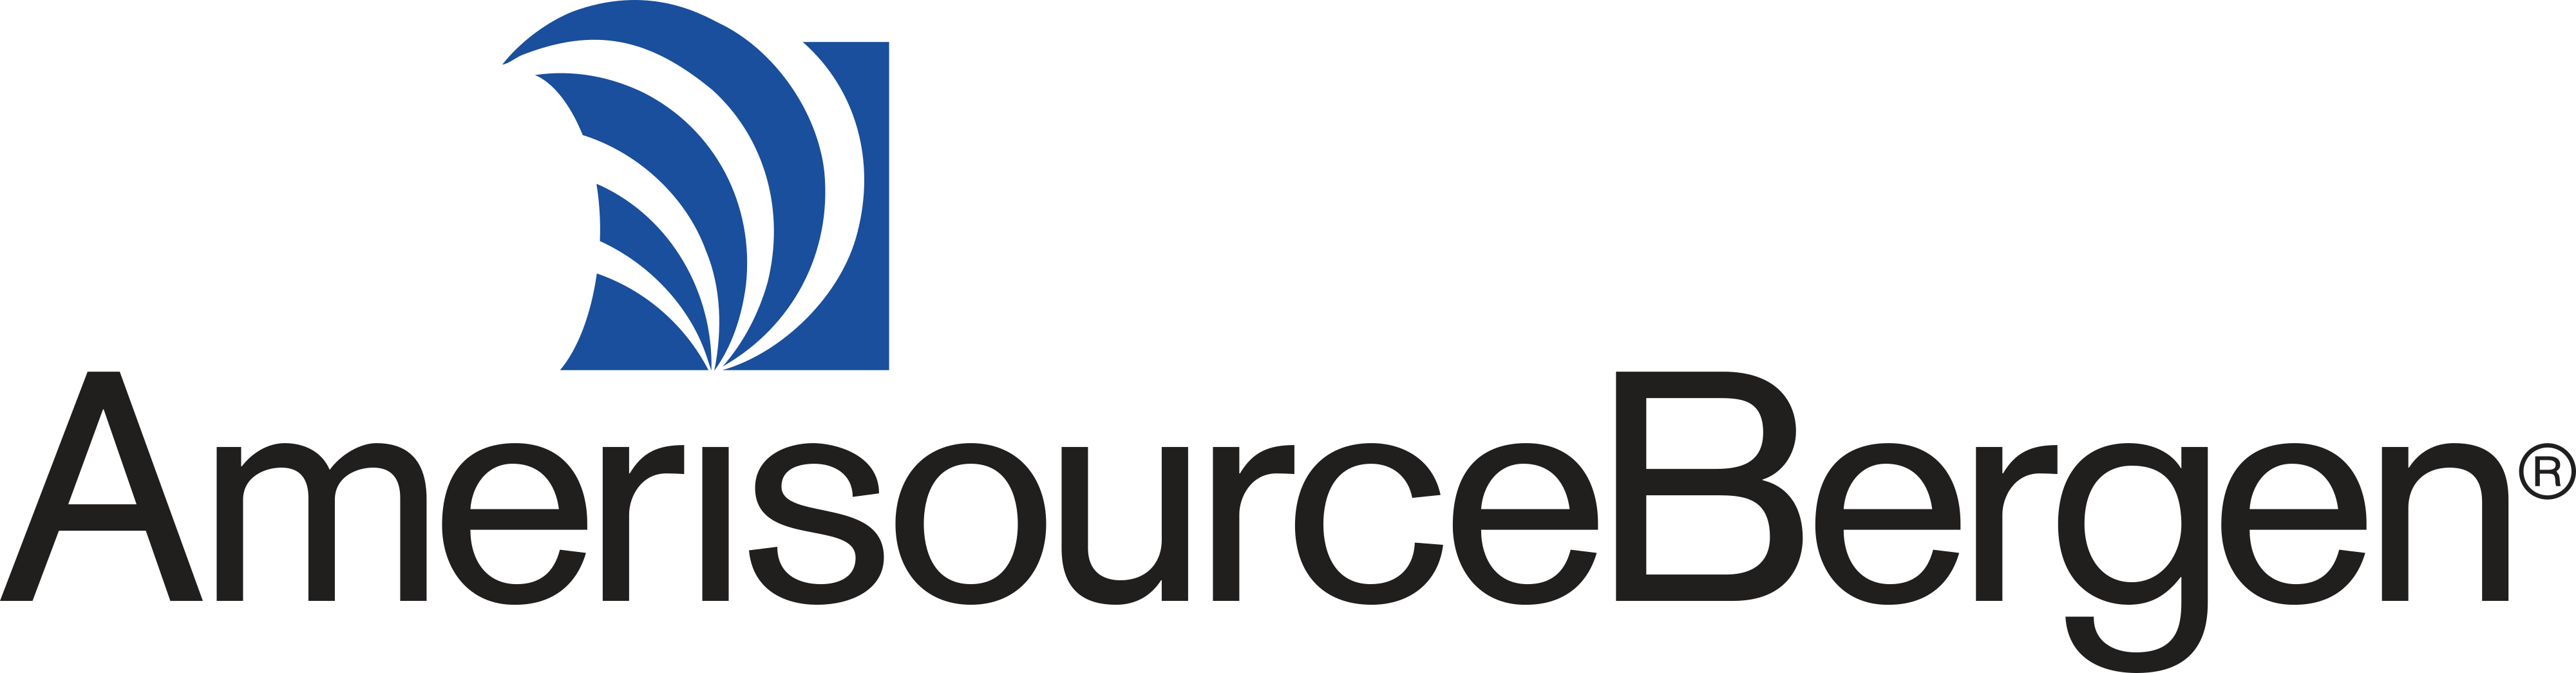 Amerisource Bergen logo - download.